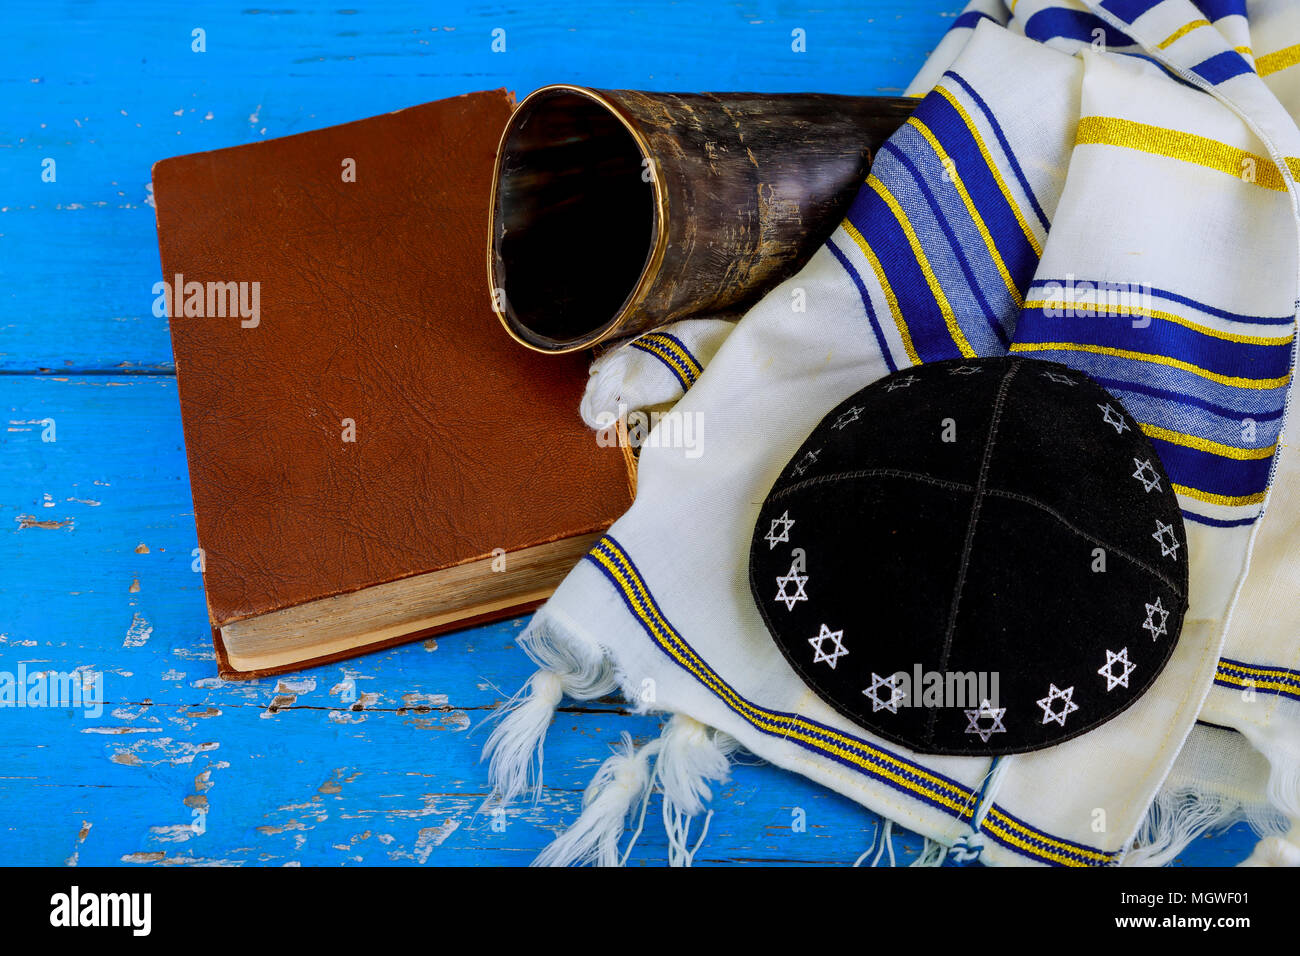 Preghiera scialle - Tallit e Shofar corno ebraica simbolo religioso Foto Stock